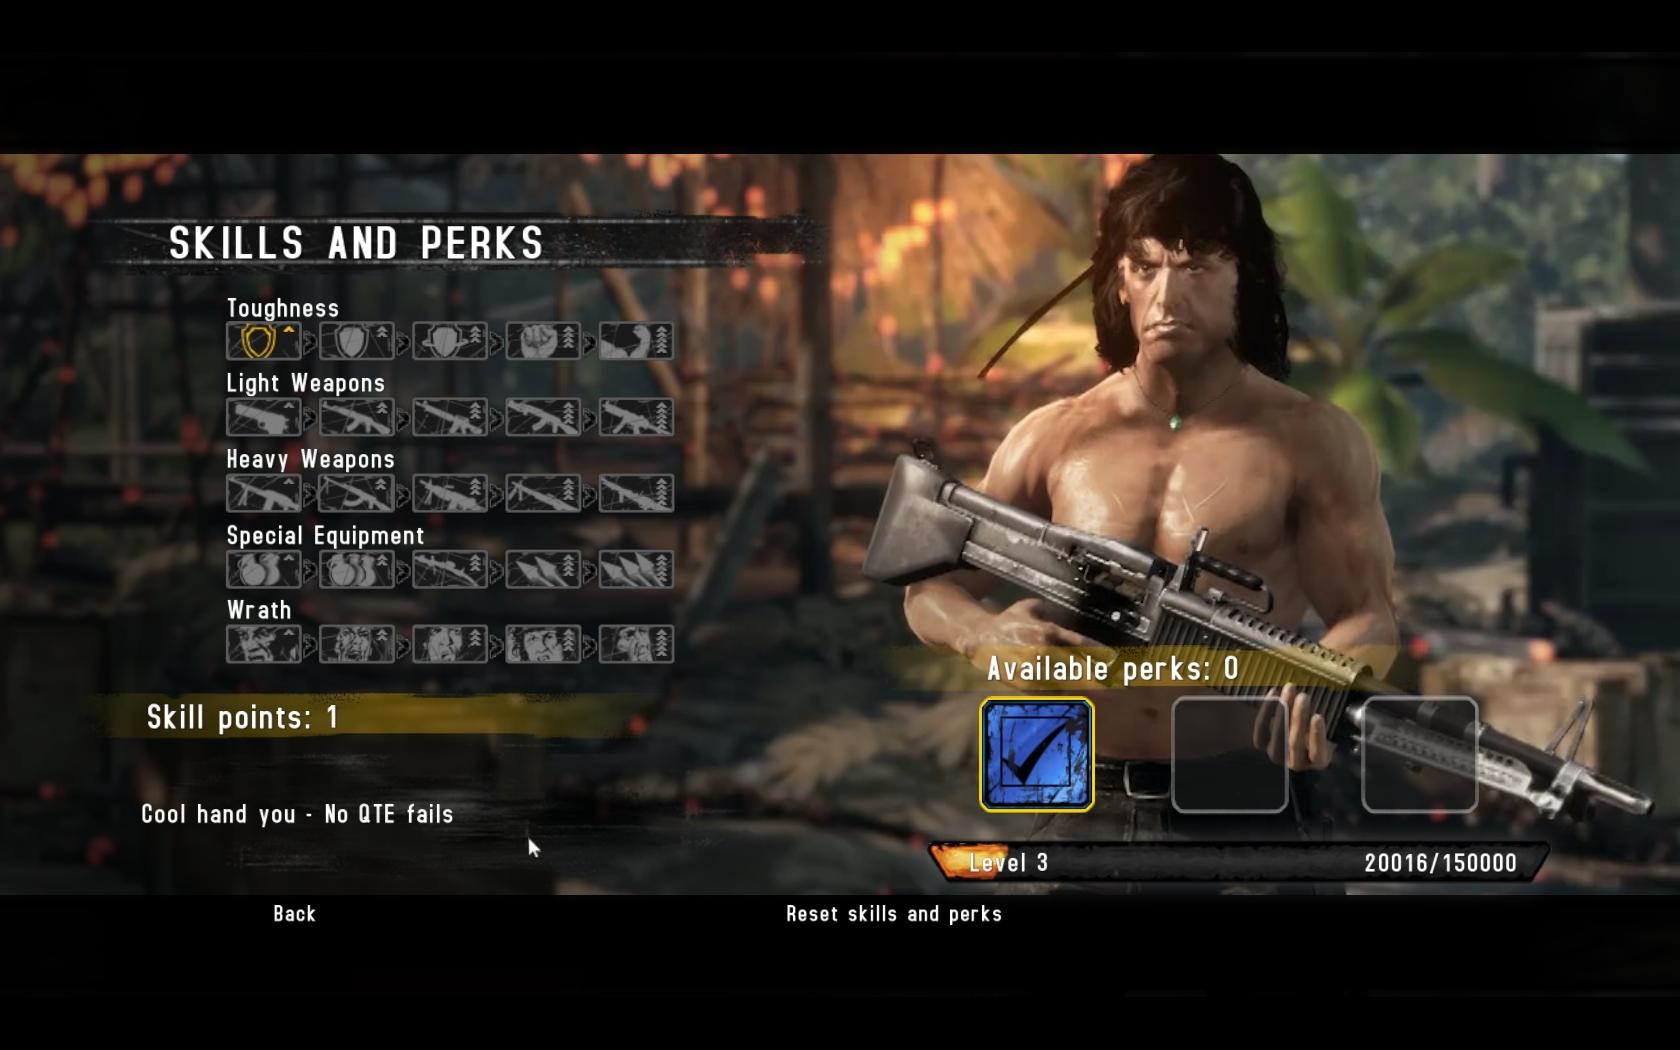 Rambo: The Video Game Prechdzku peklom vm sprjemnia drobn vylepenia